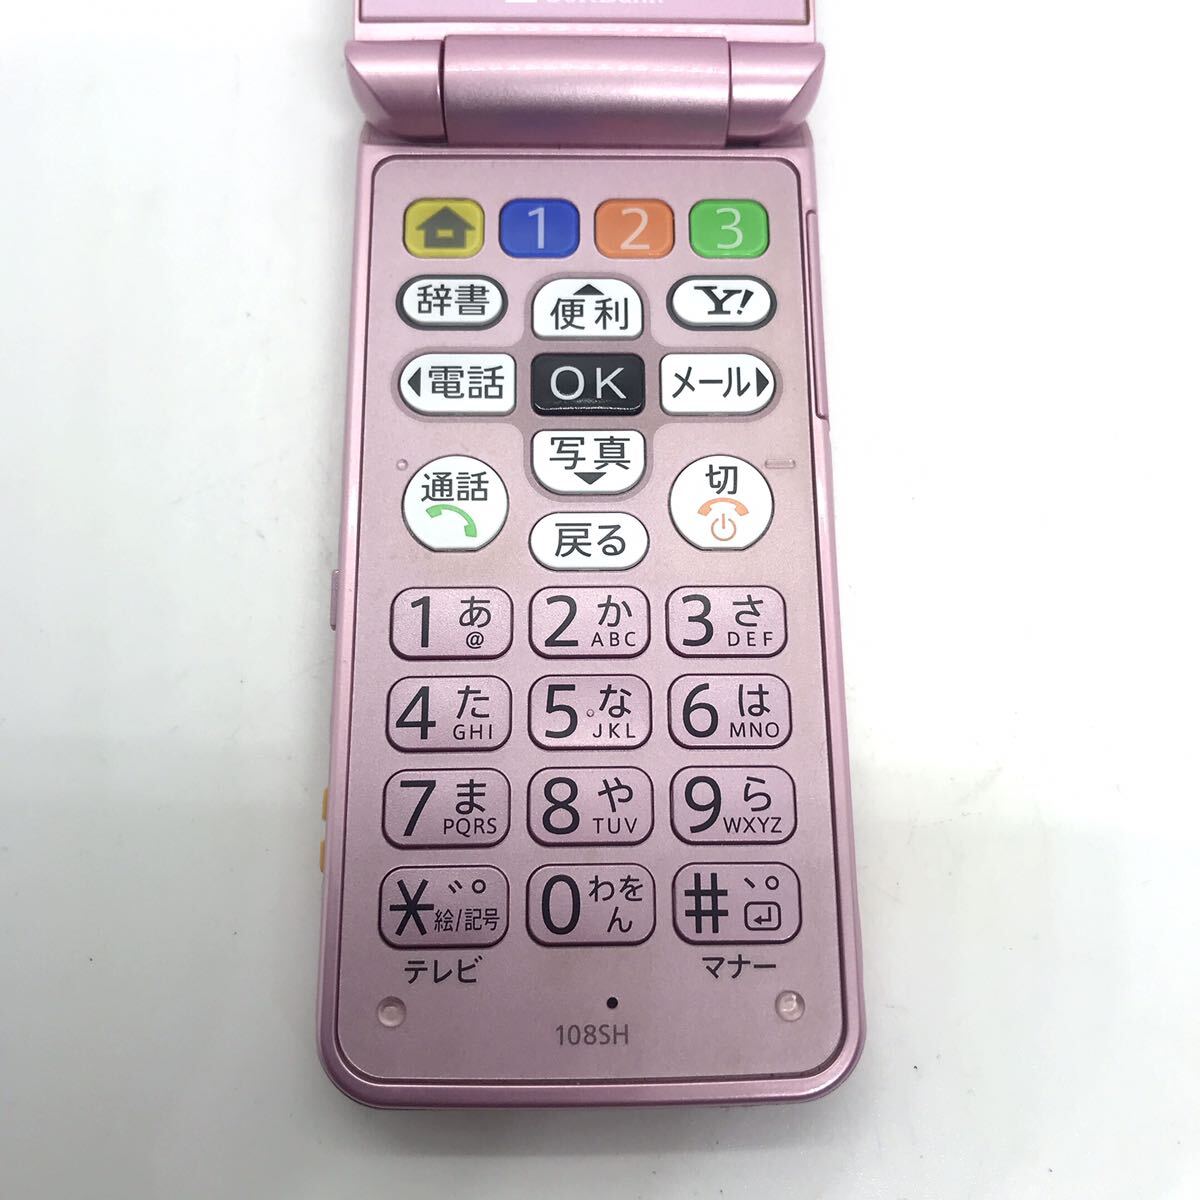 概ね美品 SoftBank かんたん携帯 108SH SHARP シャープ ガラケー 携帯電話 d5b85cy15_画像4